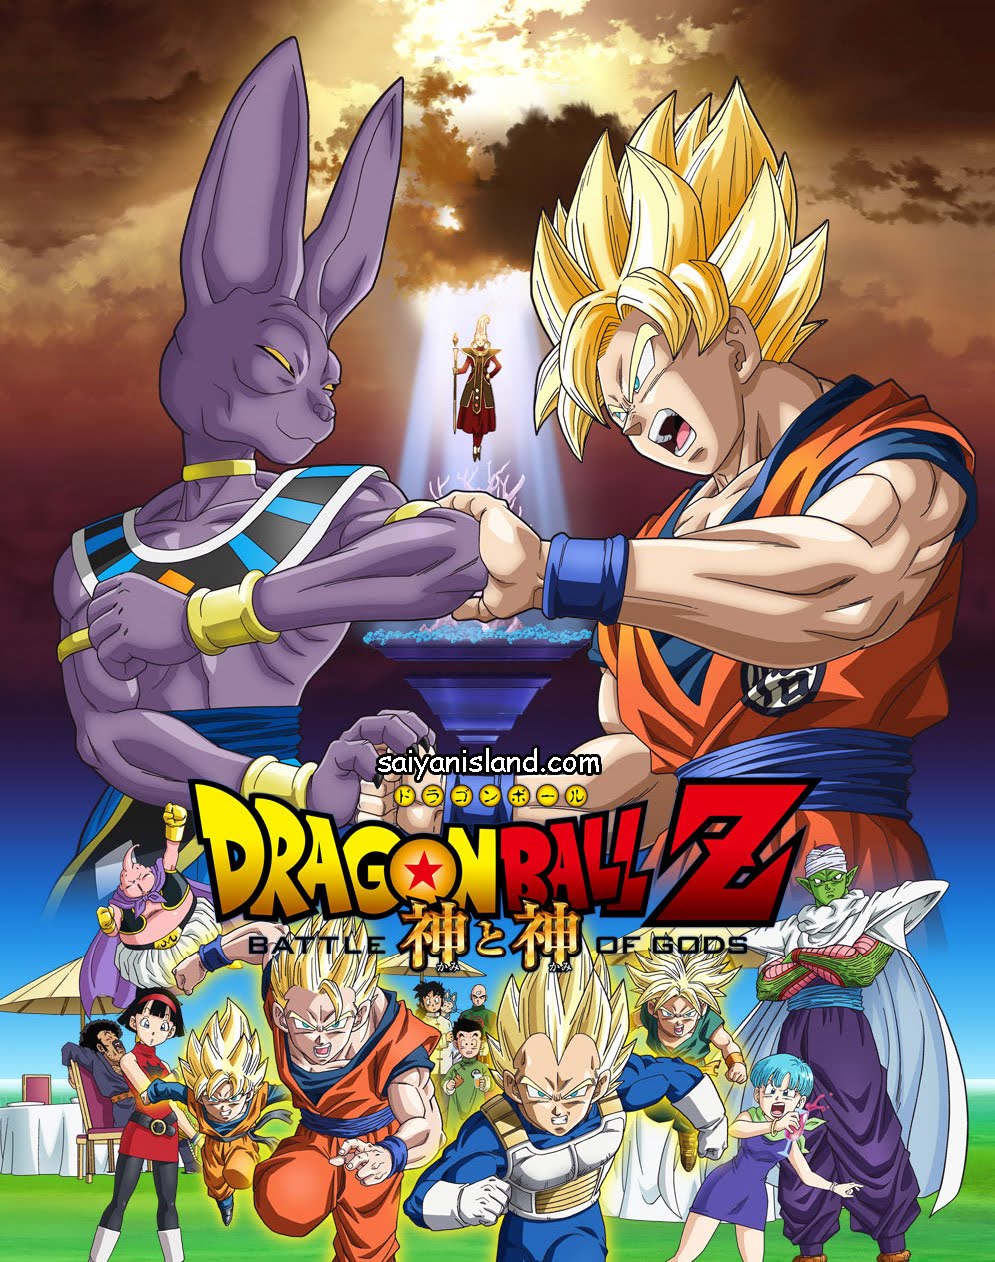 Dragon-Ball-Z-Battle-of-Gods-Poster.jpg